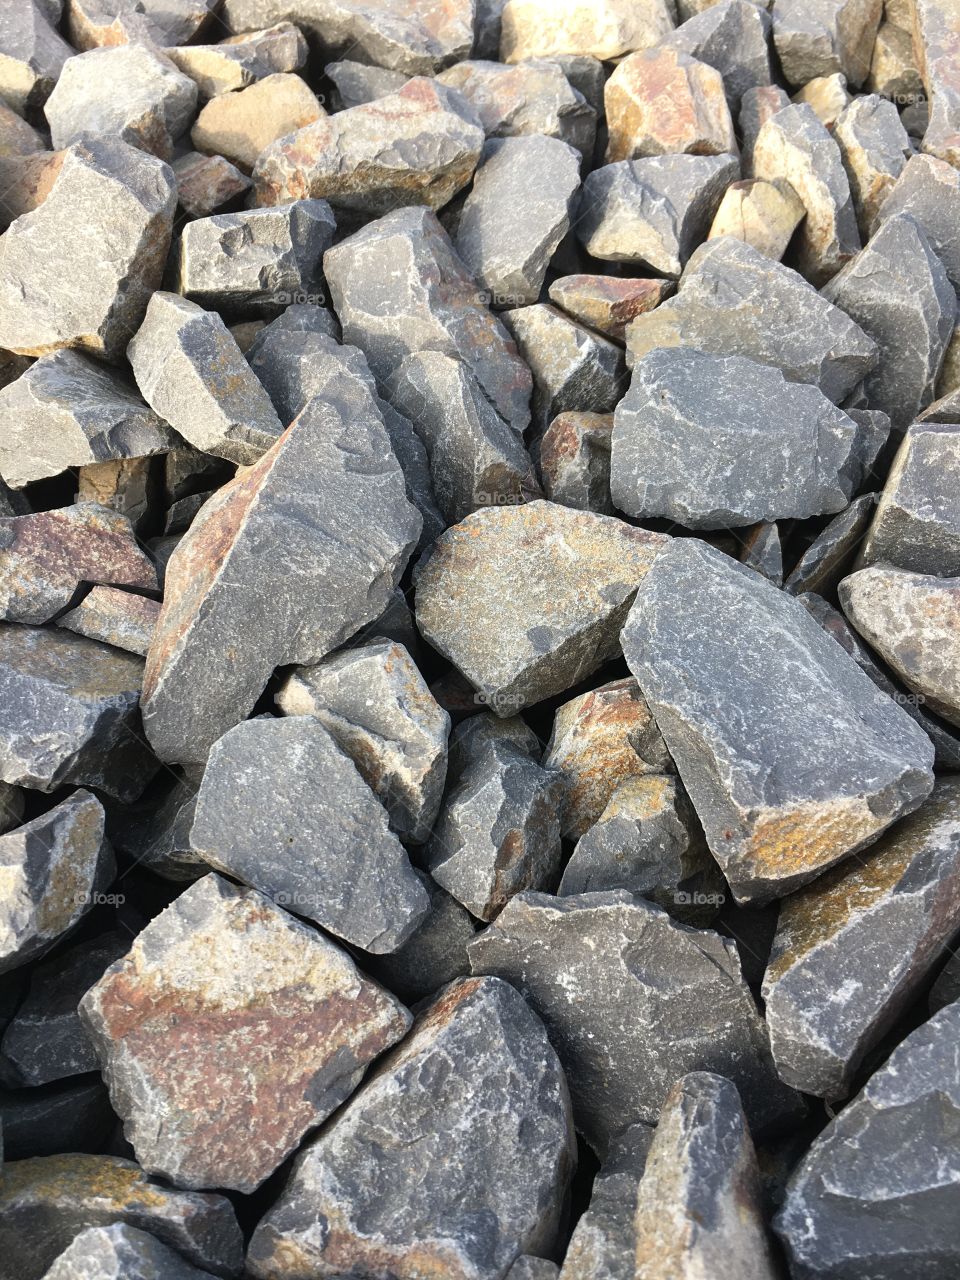 Railroad rocks